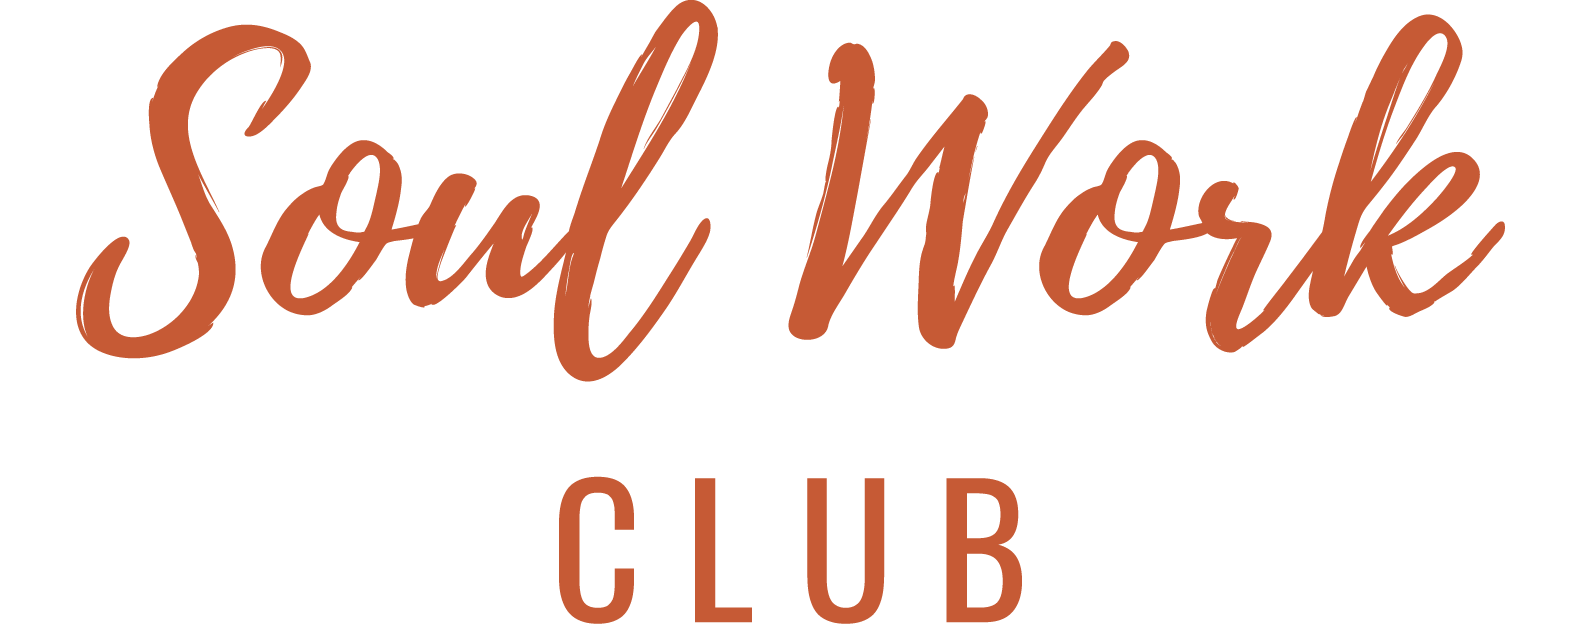 SoulWork Club